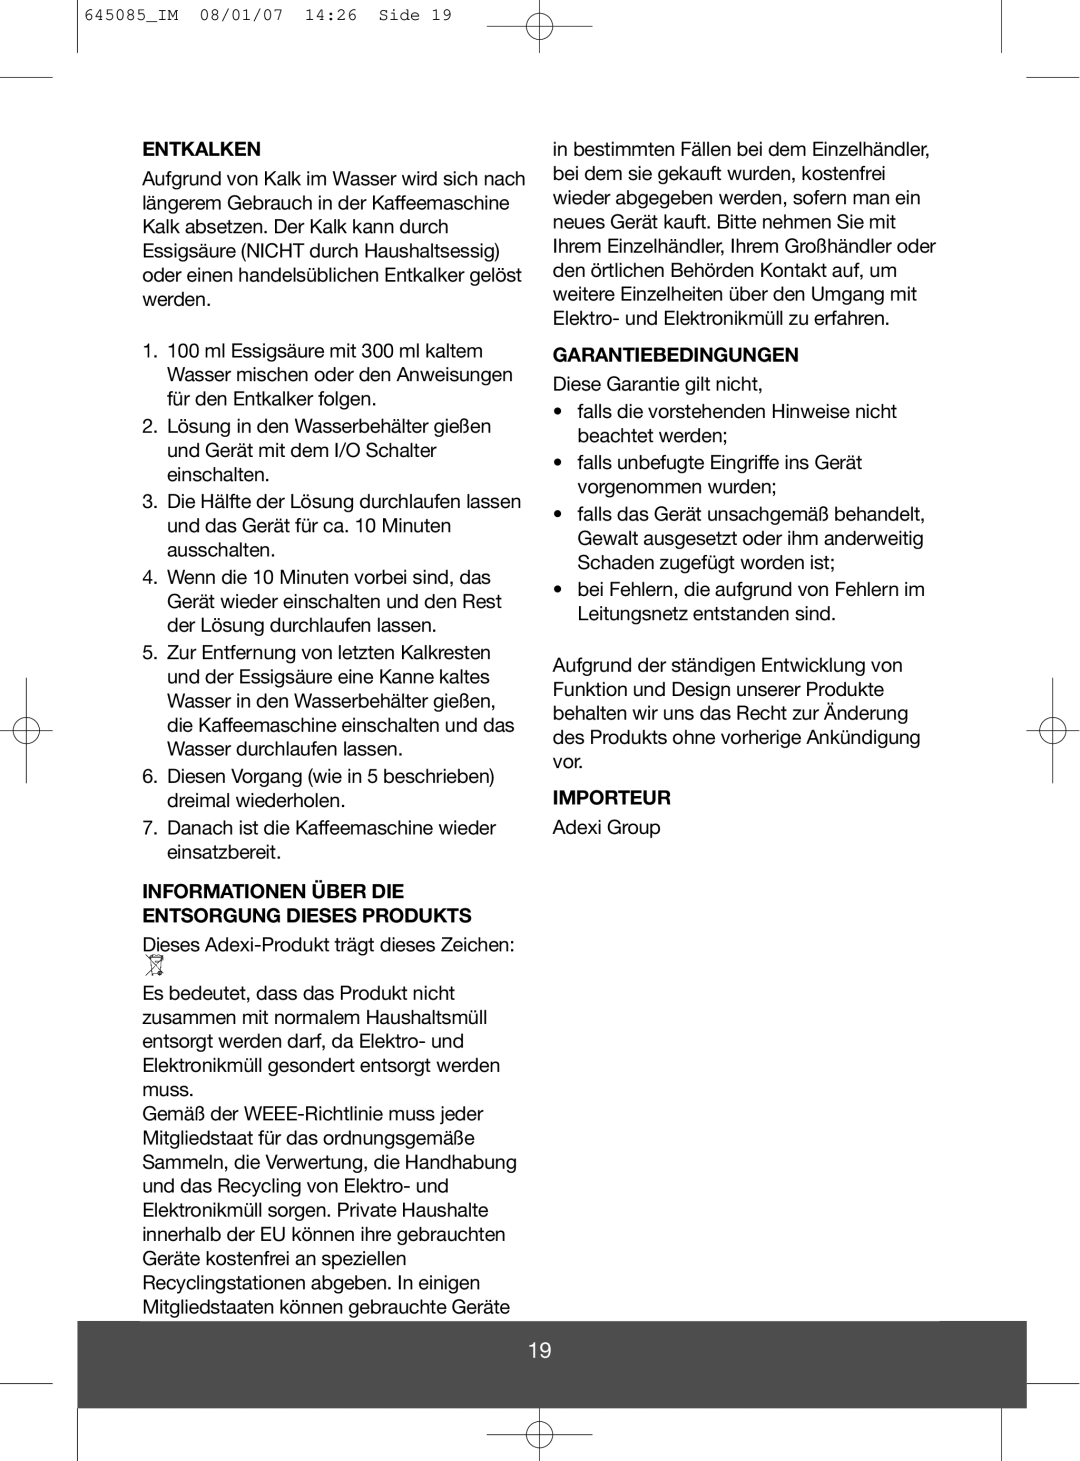 Melissa 745-194 manual Entkalken, Informationen Über Die Entsorgung Dieses Produkts, Garantiebedingungen, Importeur 